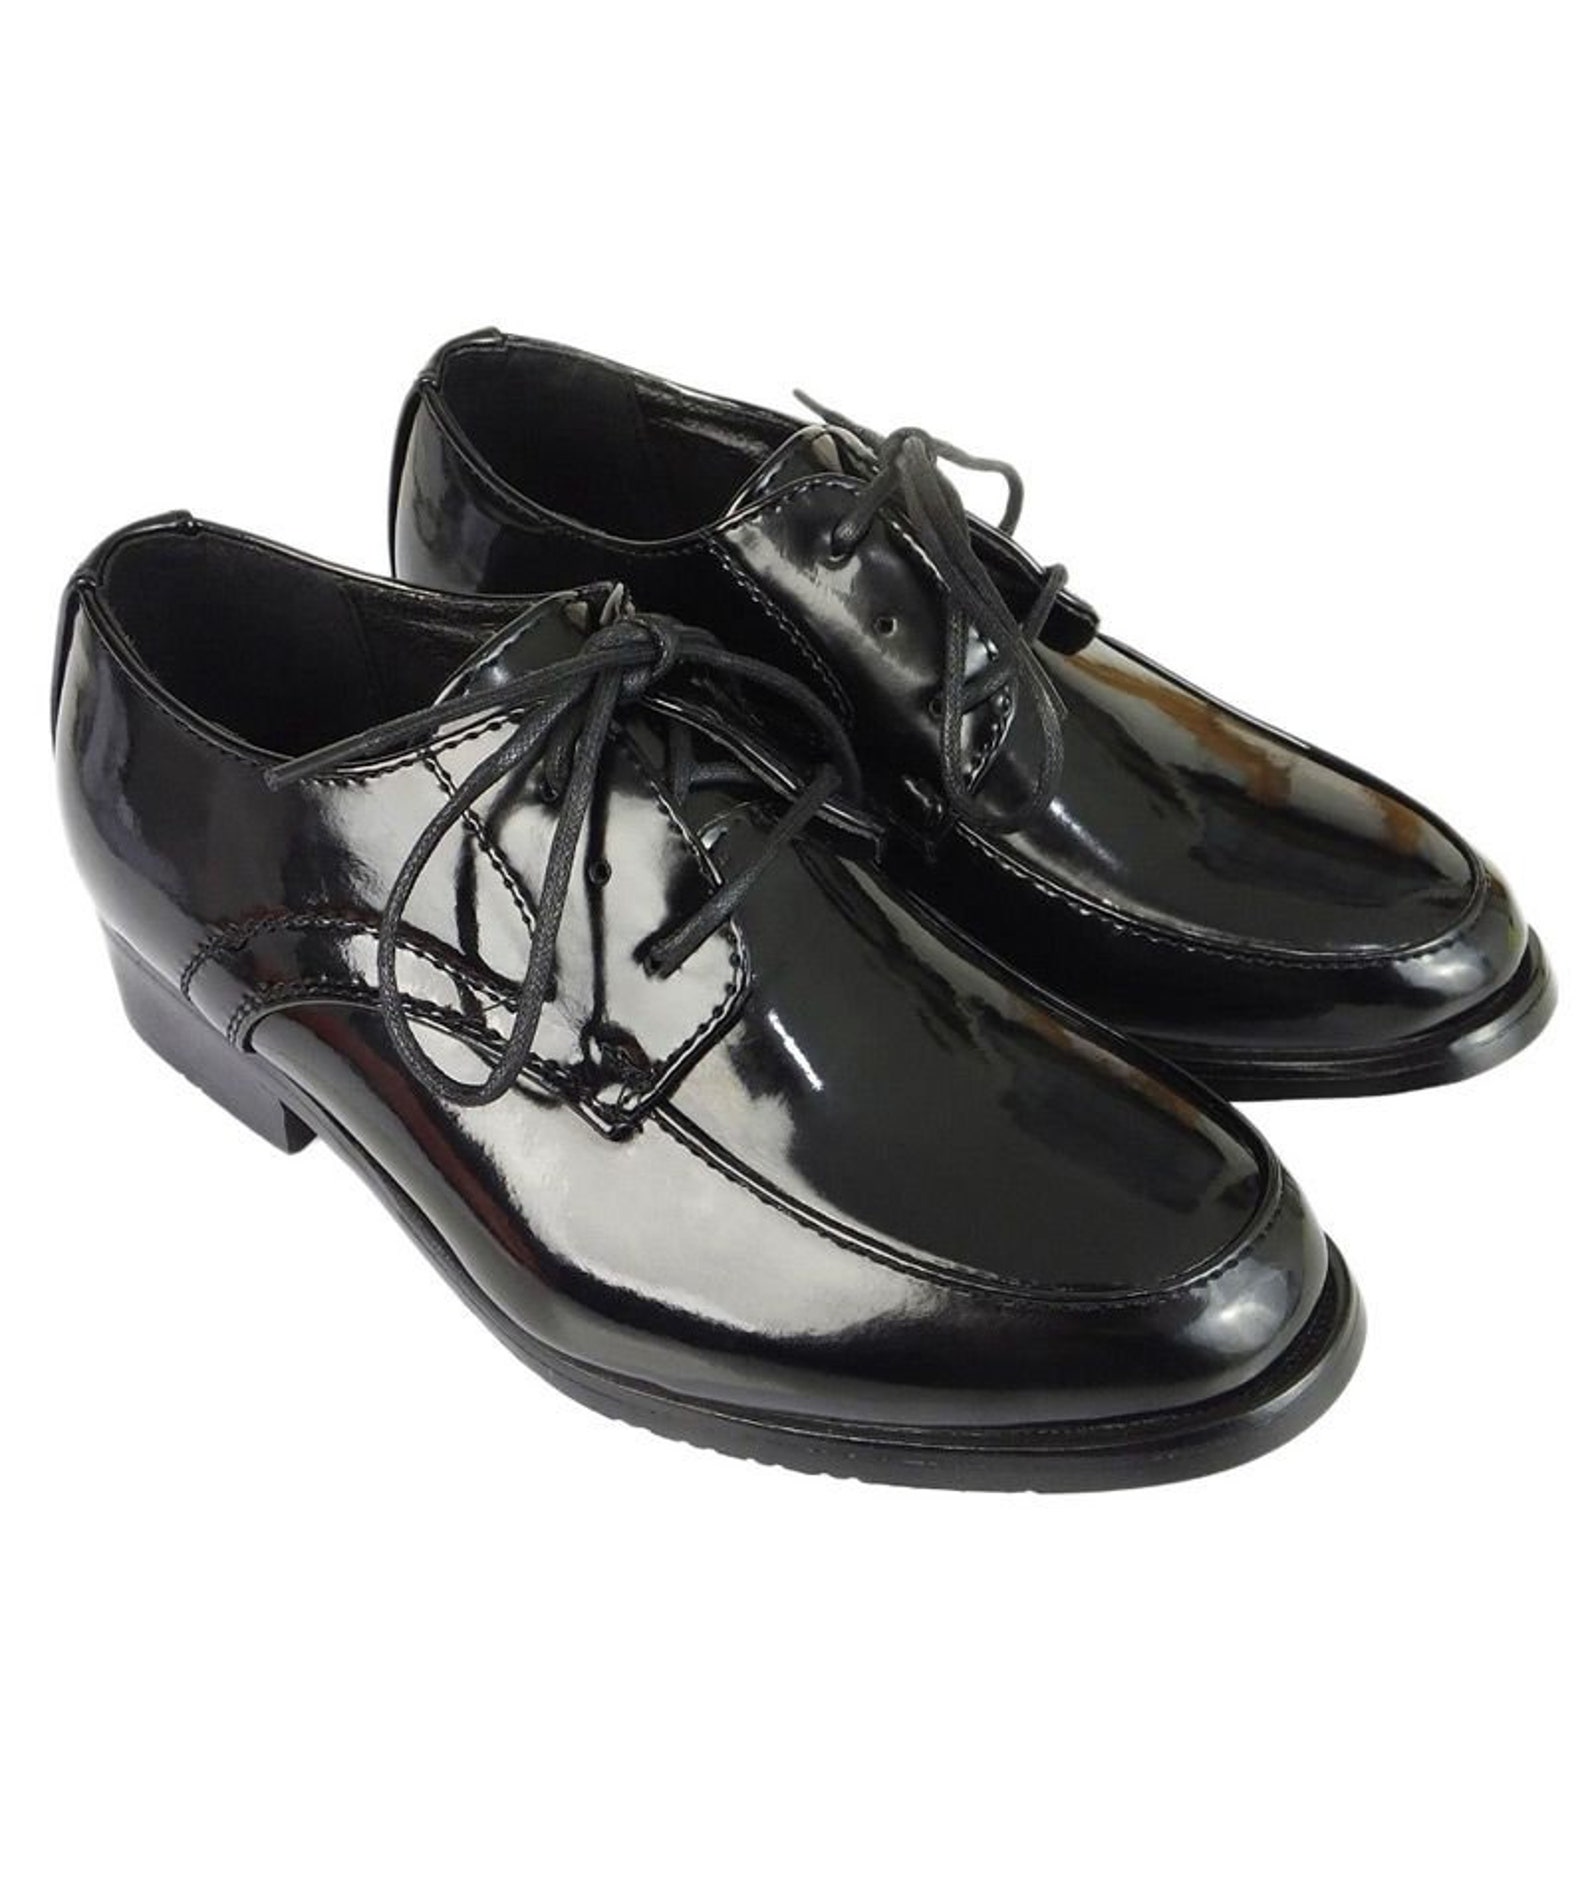 Designer Boys Black Patent Lace up Shoes | Etsy